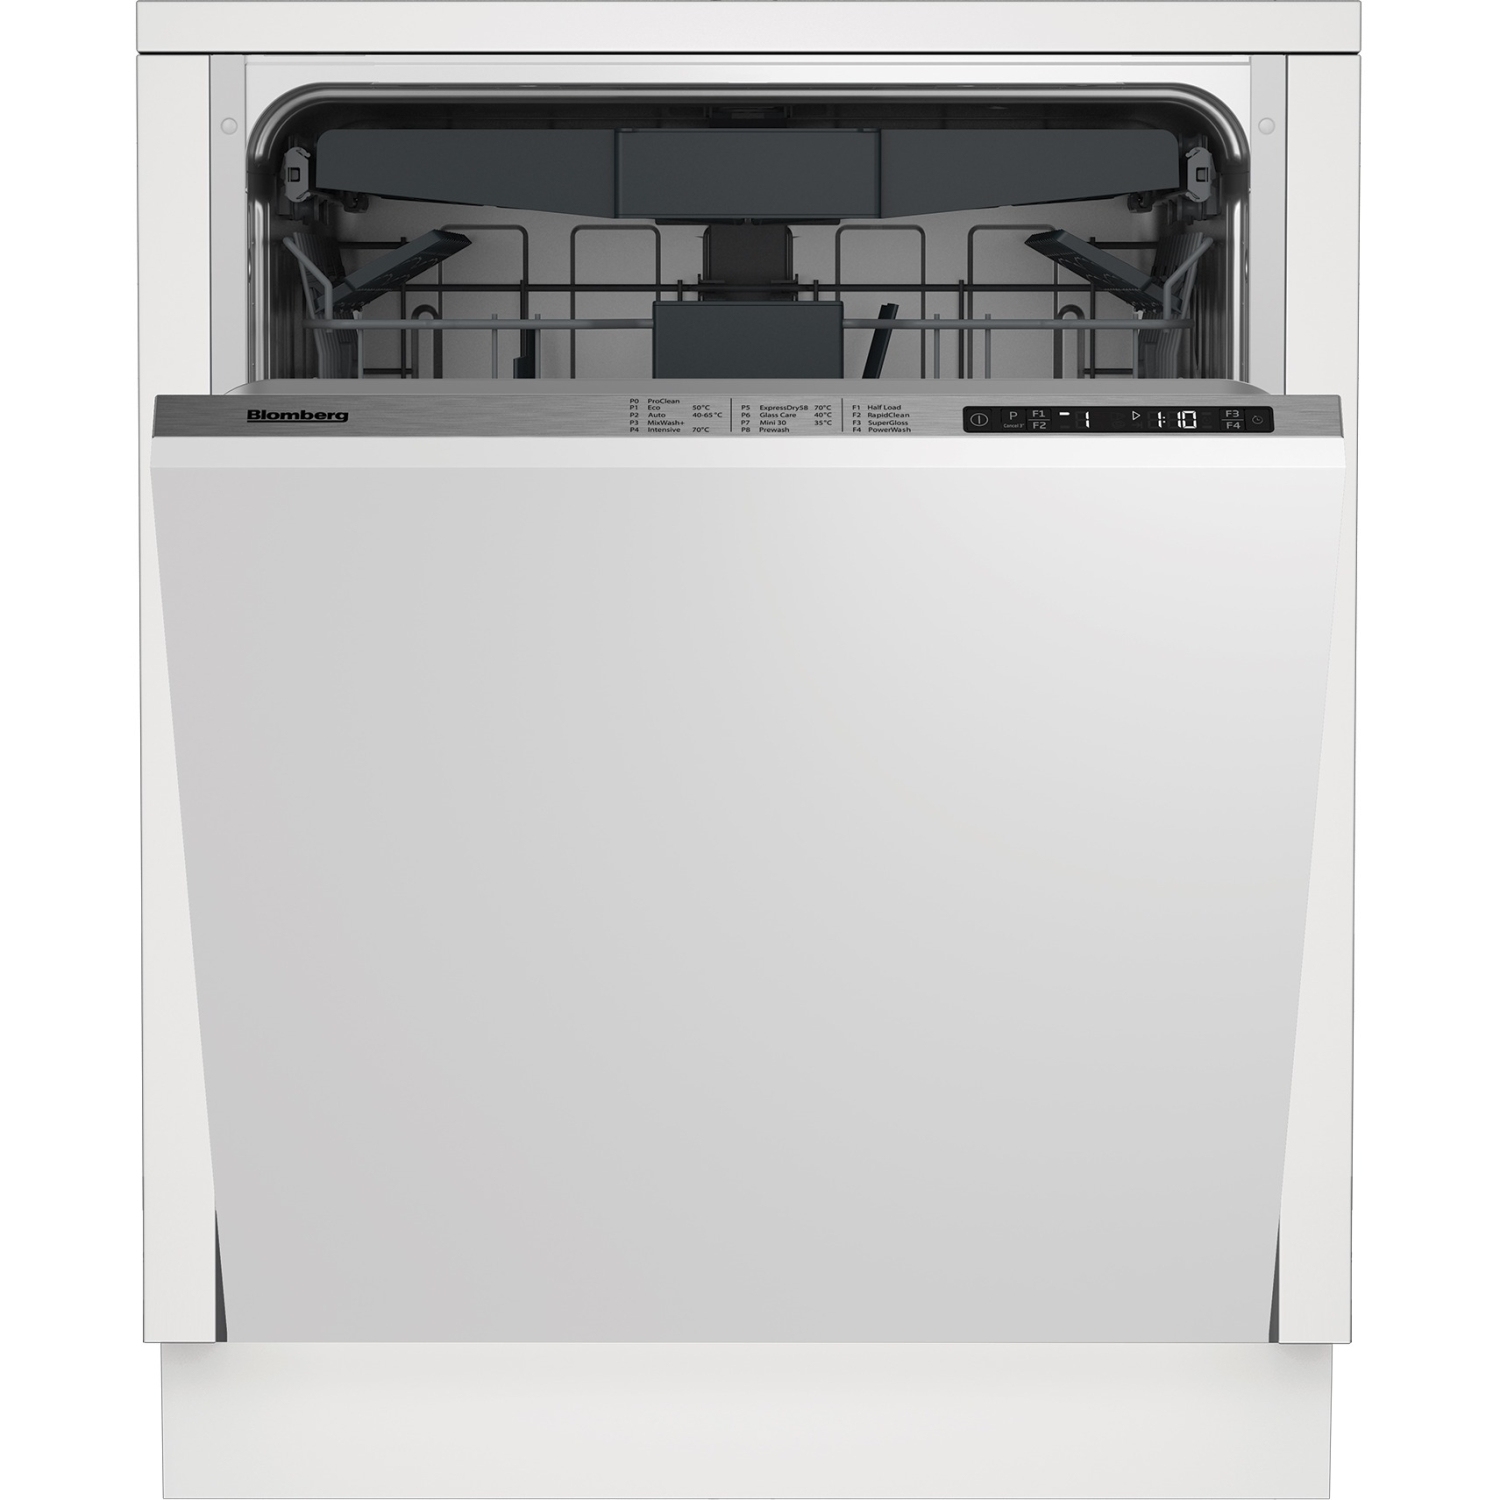 Blomberg LDV42244 Integrated Full Size Dishwasher - 14 Place Settings - 2